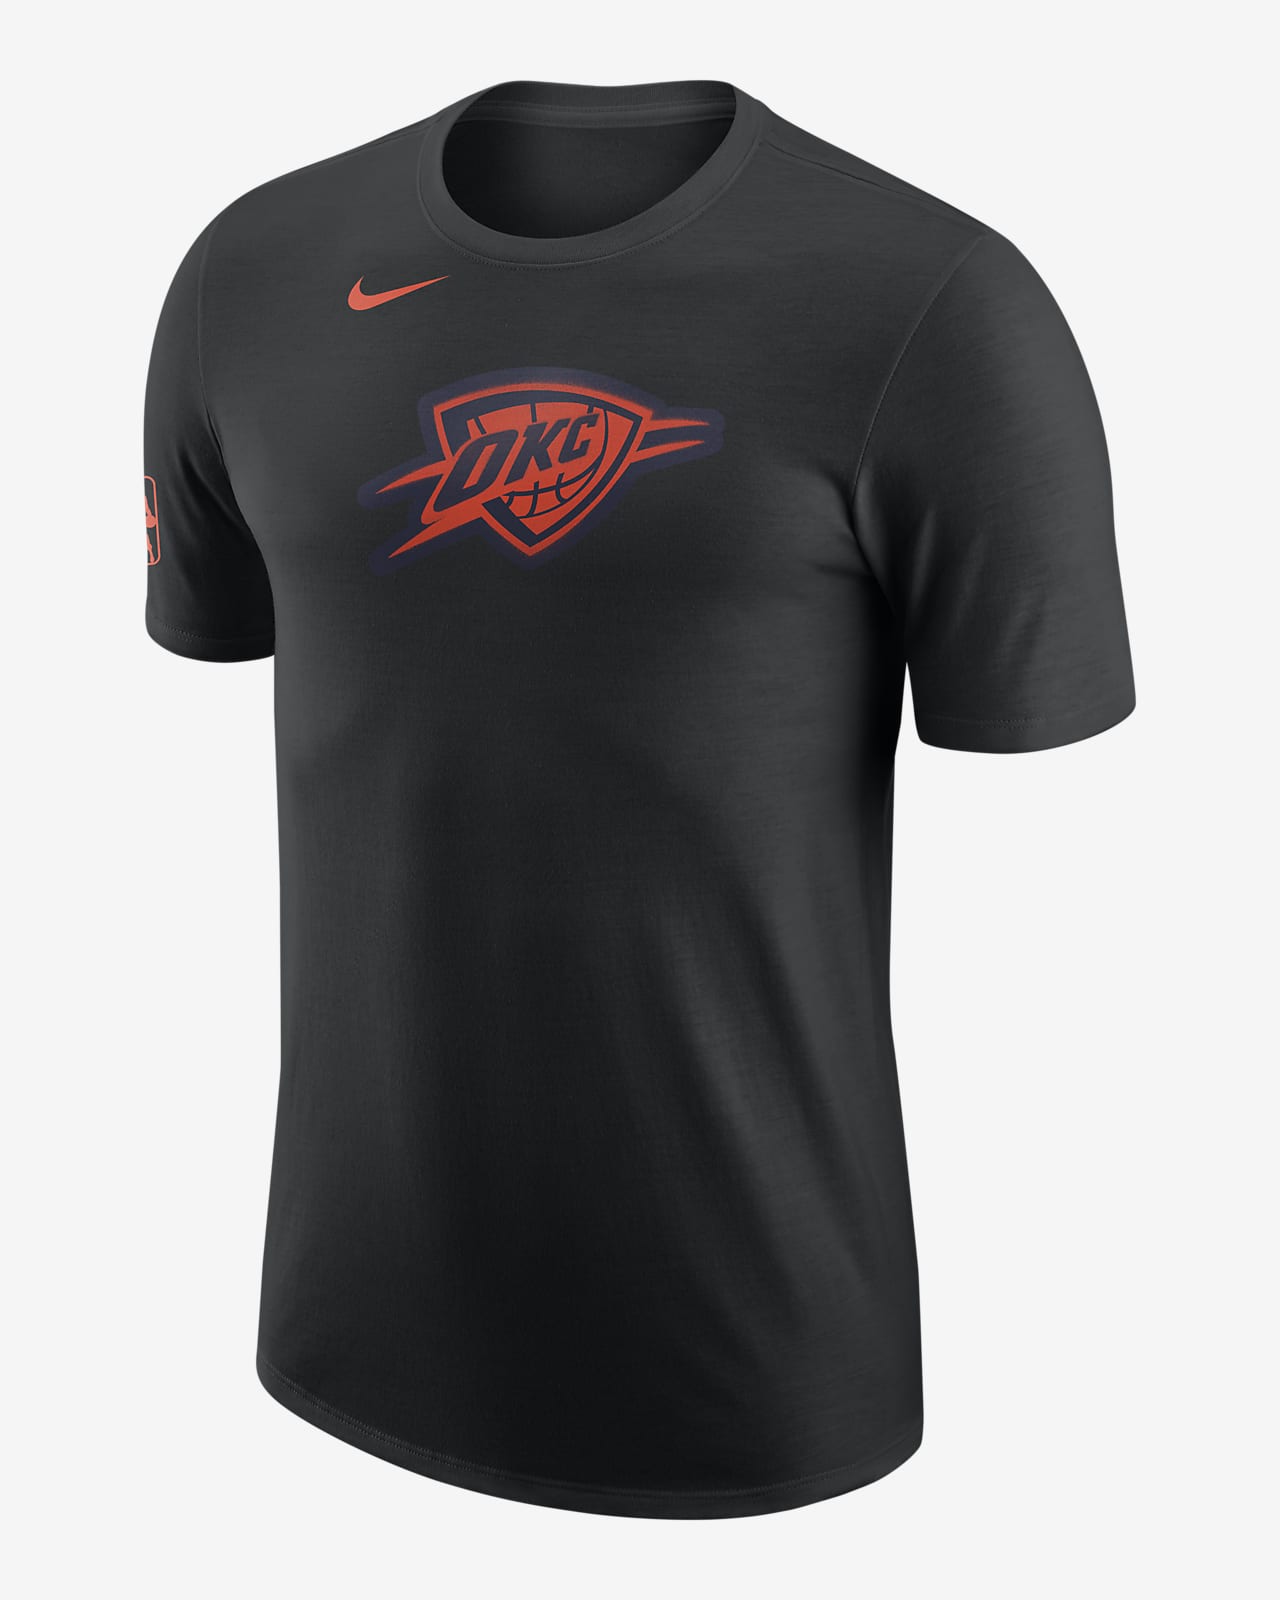 Oklahoma City Thunder City Edition Men's Nike NBA T-Shirt